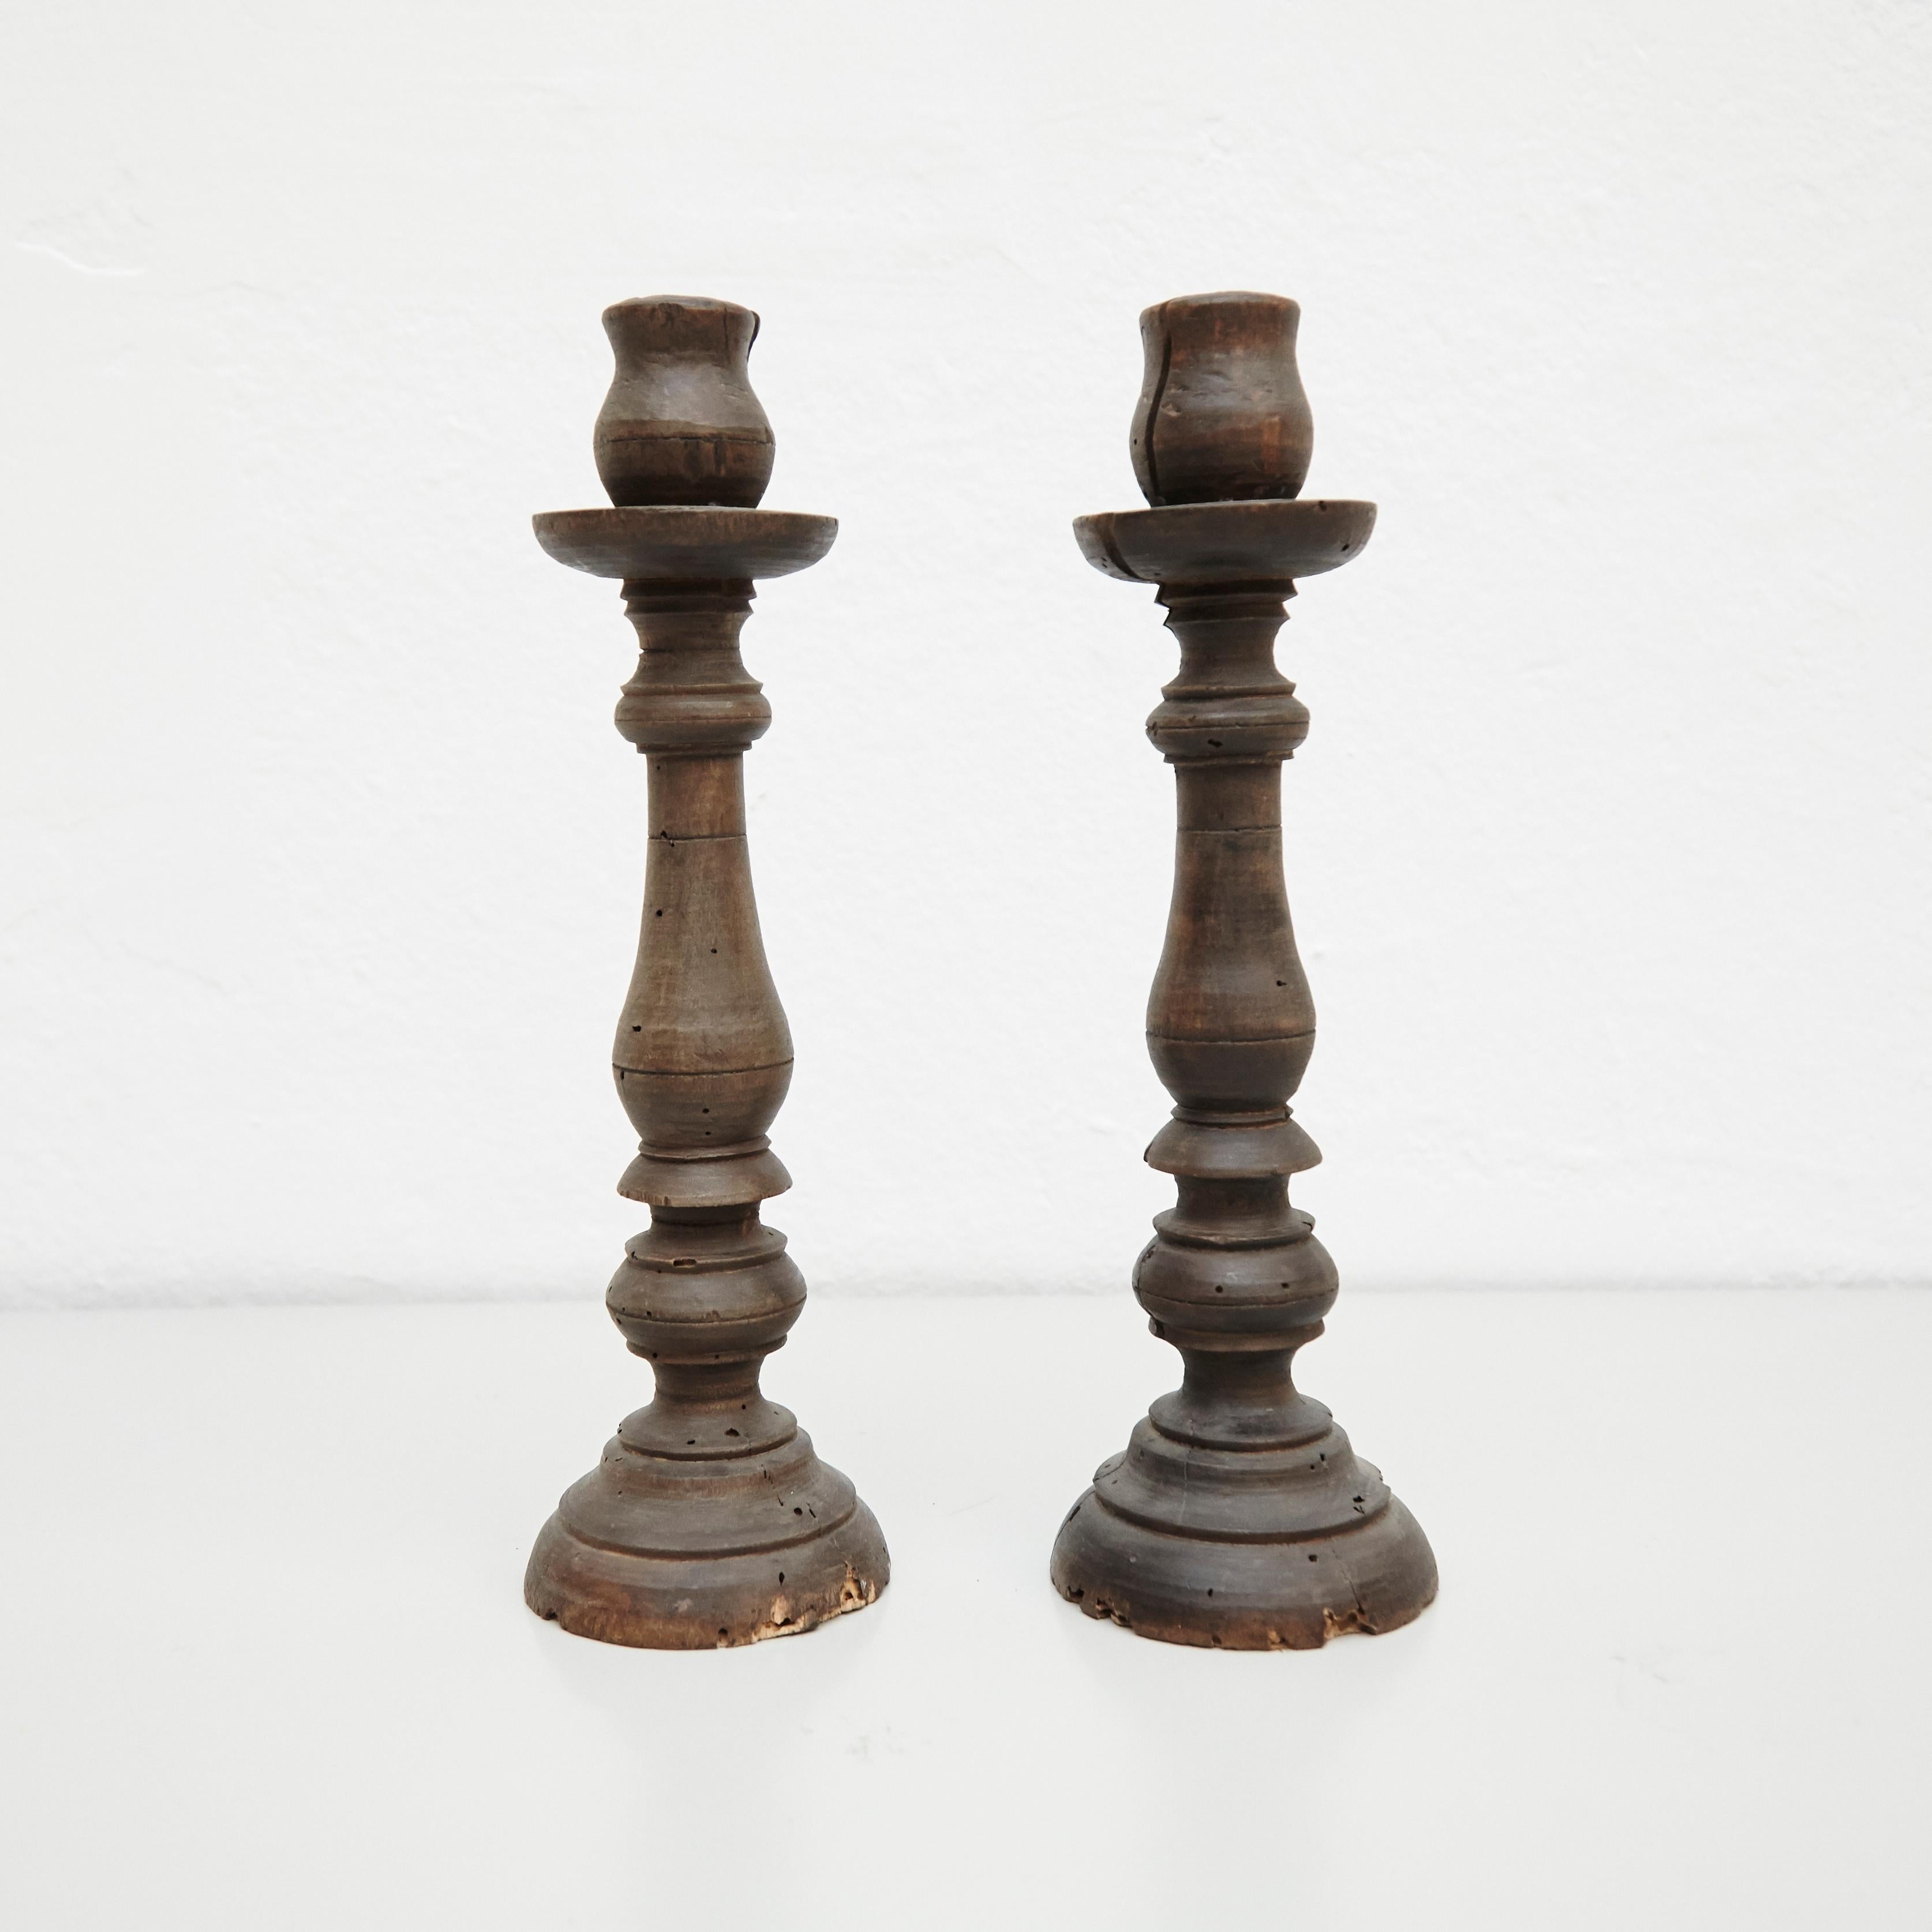 Paire de chandeliers en bois rustique traditionnels du milieu du XIXe siècle.
Par un fabricant inconnu, France.

En état d'origine, avec une usure mineure conforme à l'âge et à l'utilisation, préservant une belle patine.

Matériaux